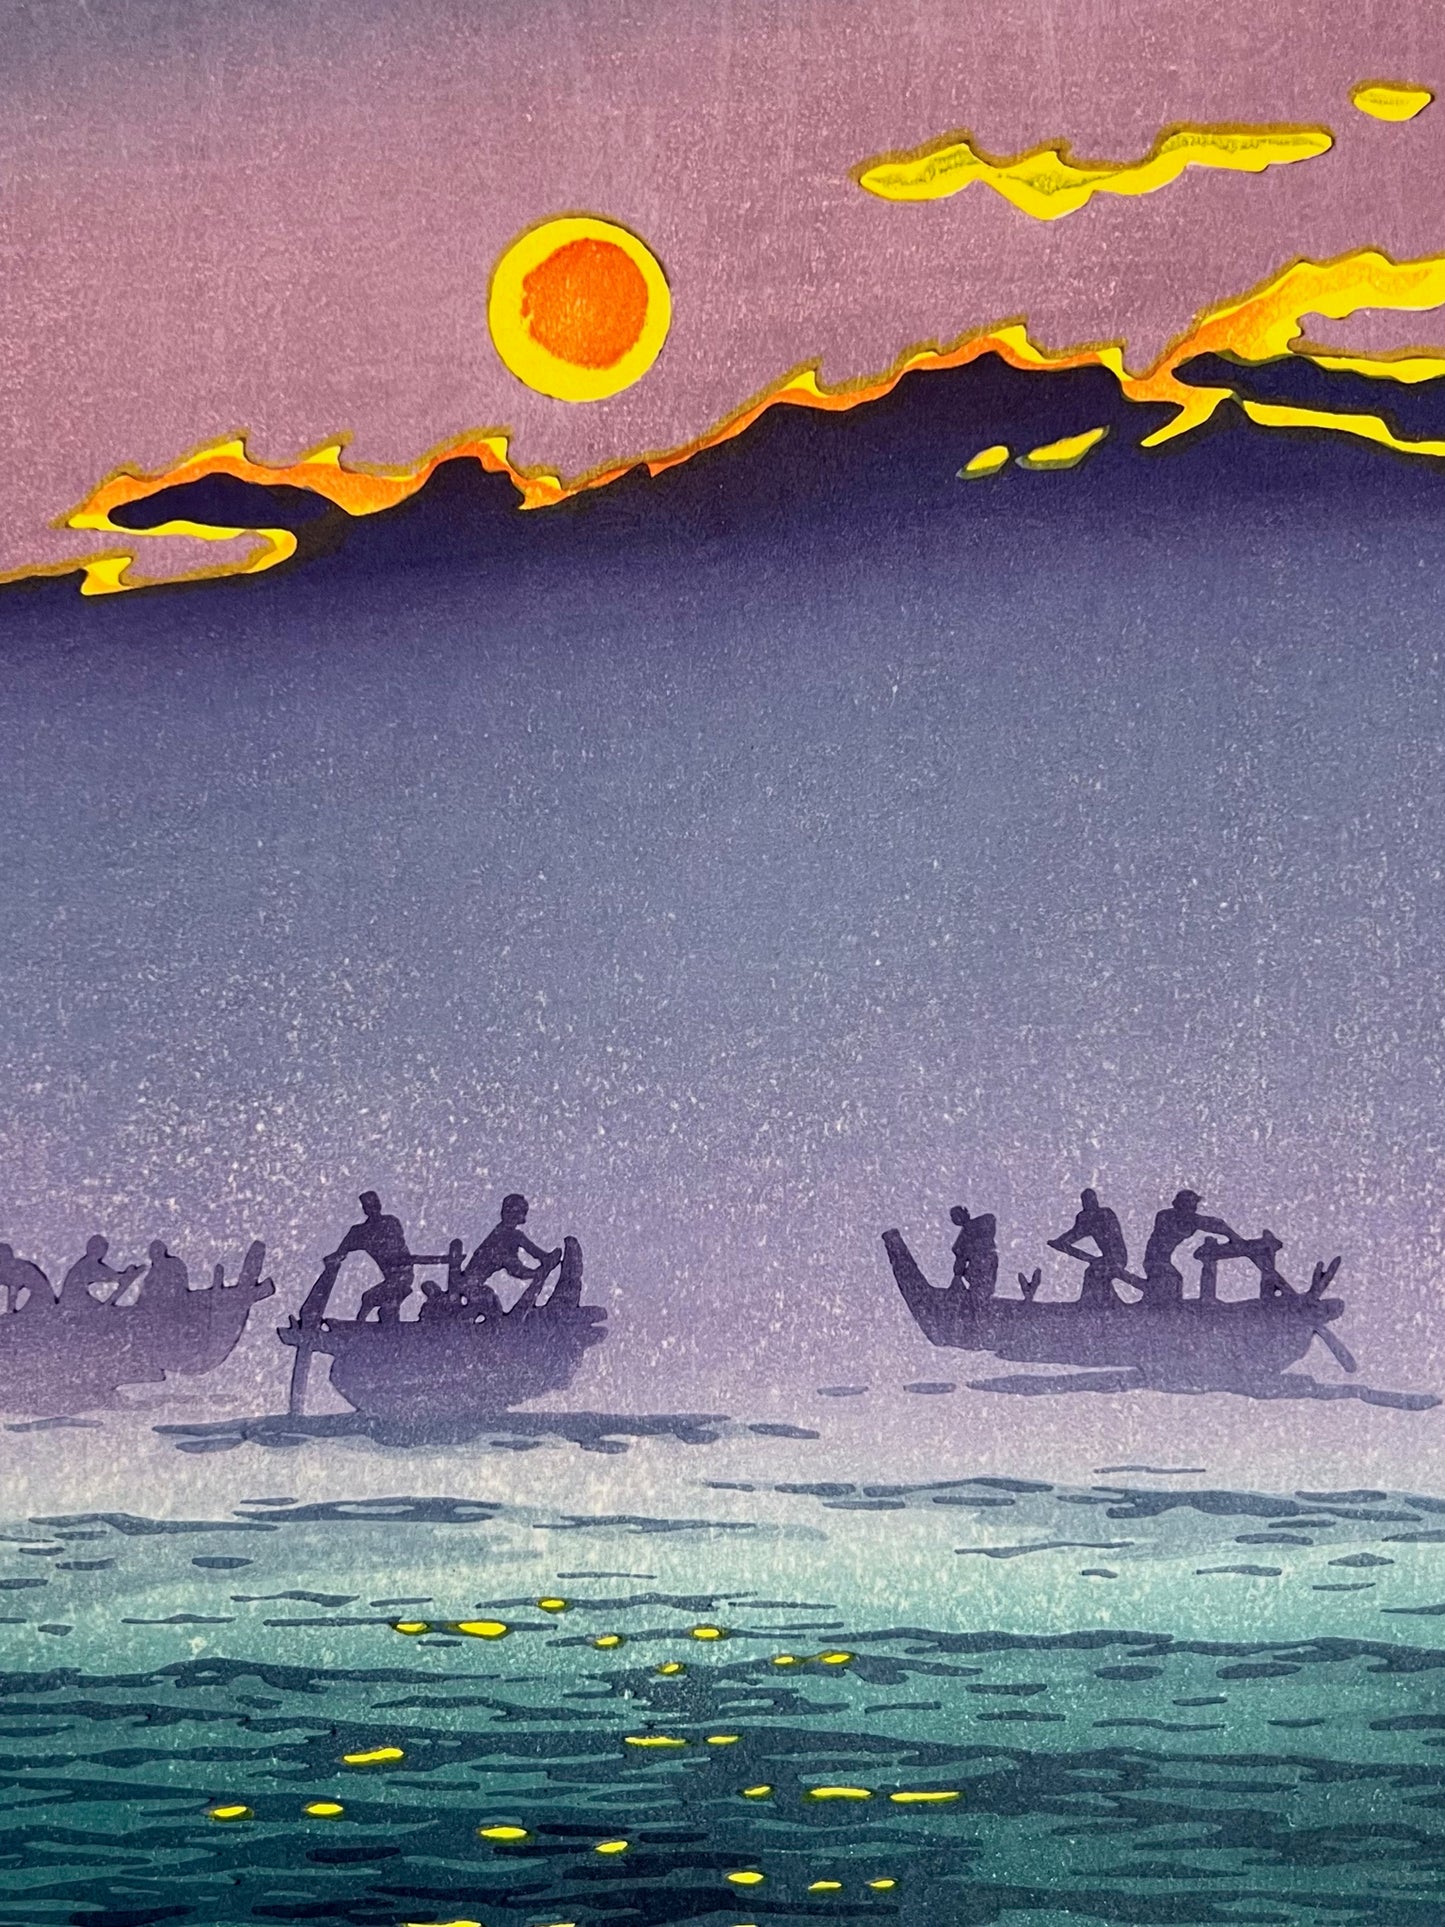 estampe japonaise de kasamatsu soleil levant sur le lac, gros plan sur les bateaux et le soleil jaune et orange